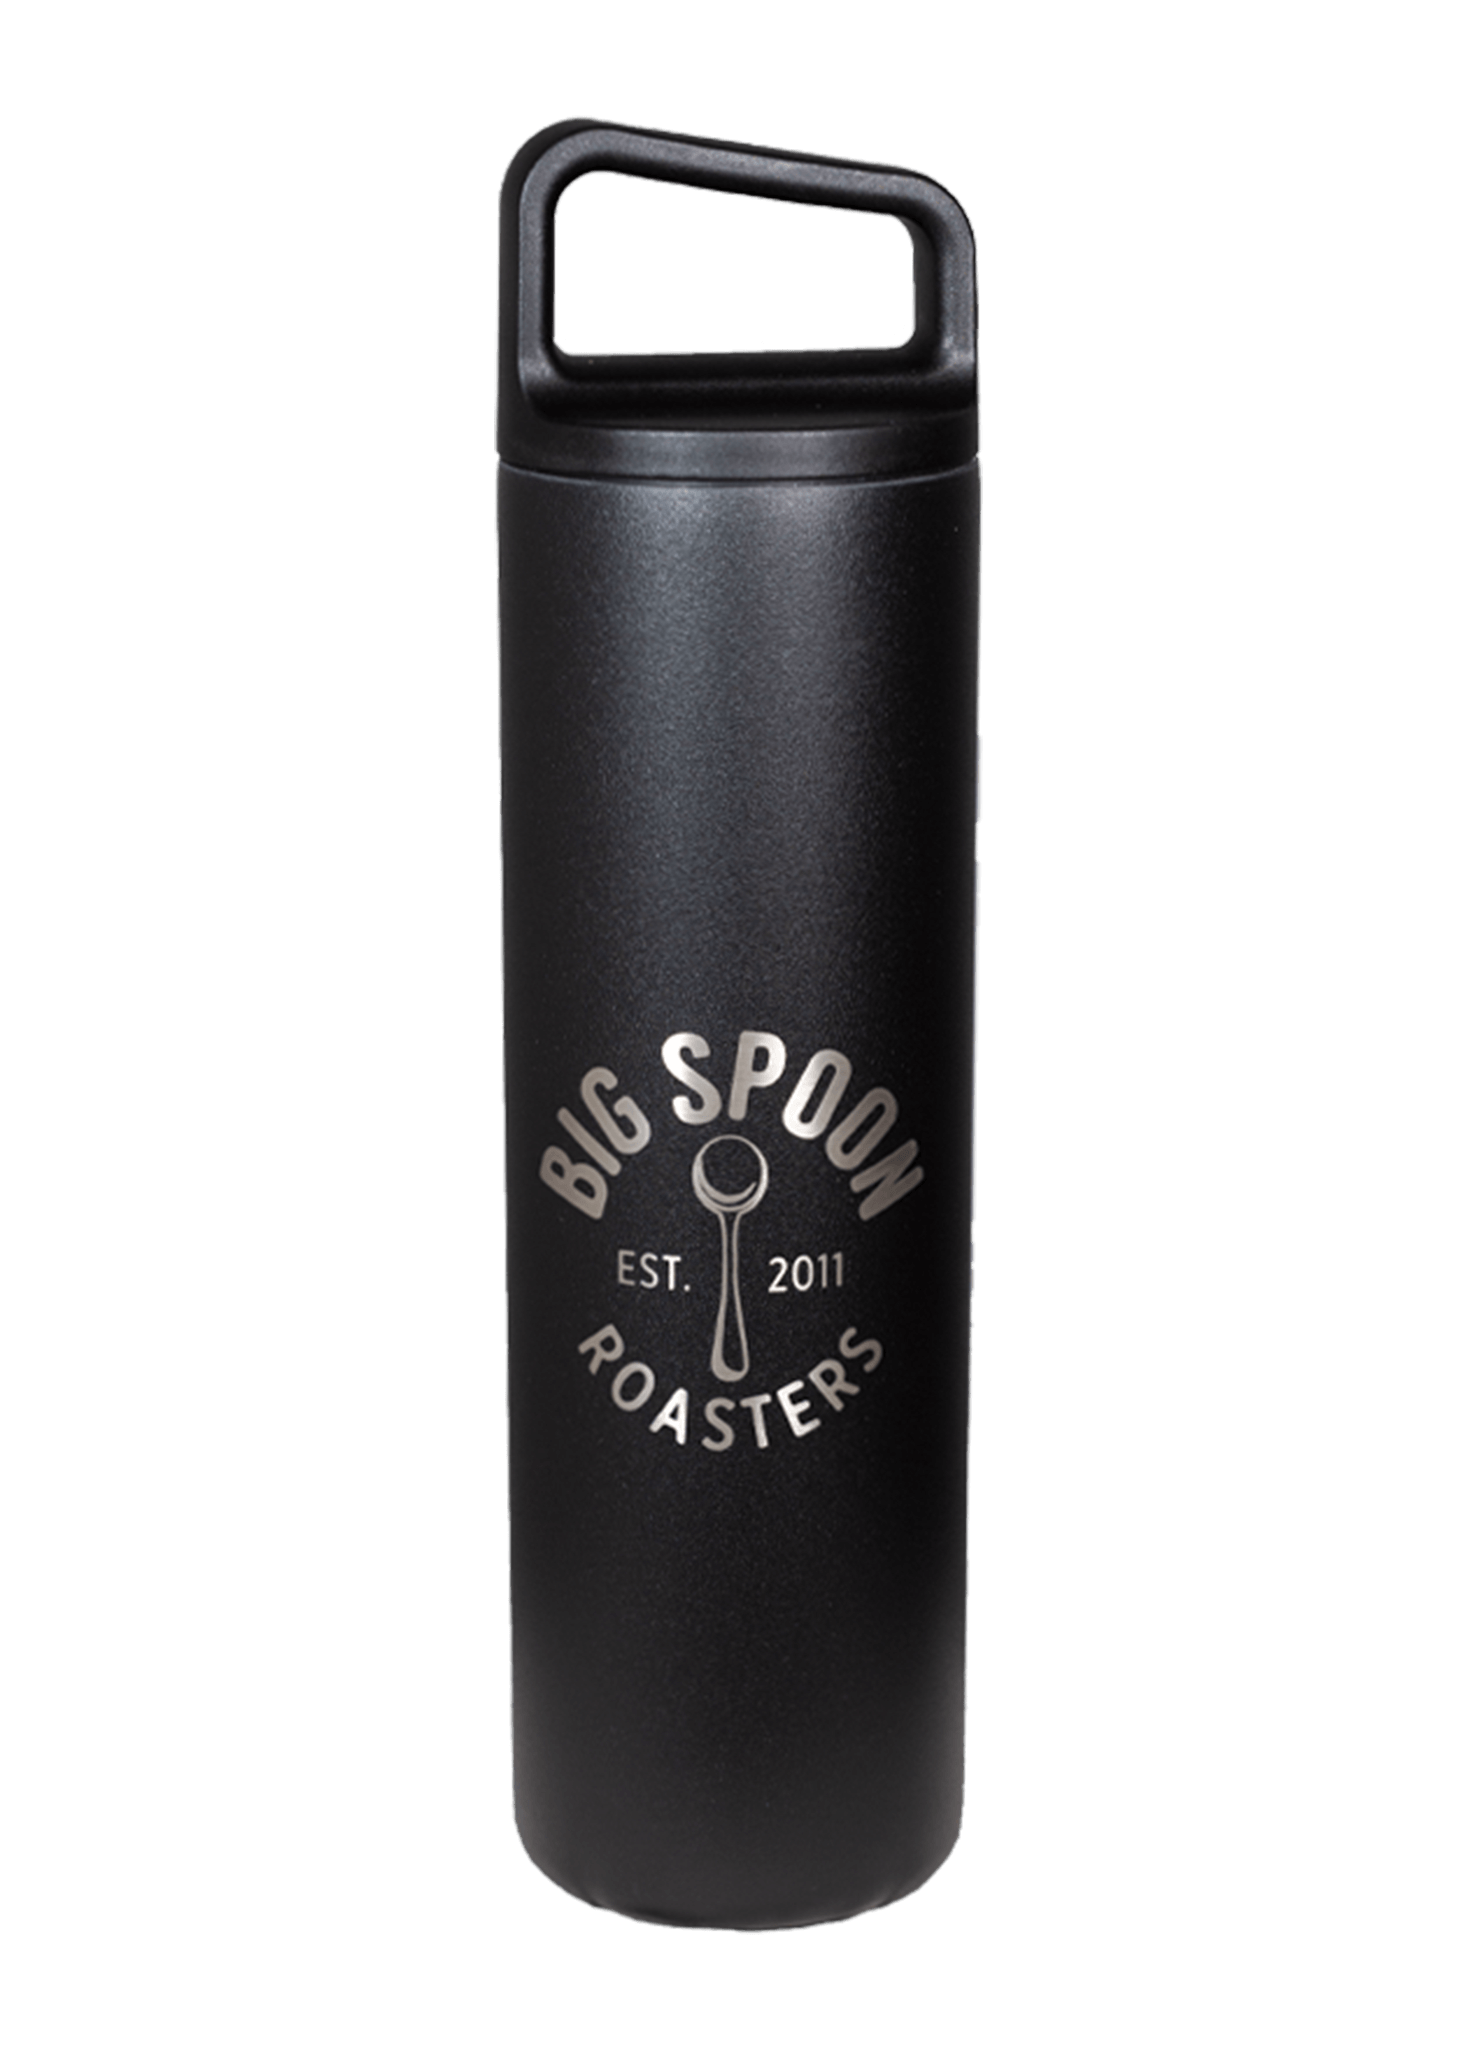 Big Spoon Roasters Miir water bottle